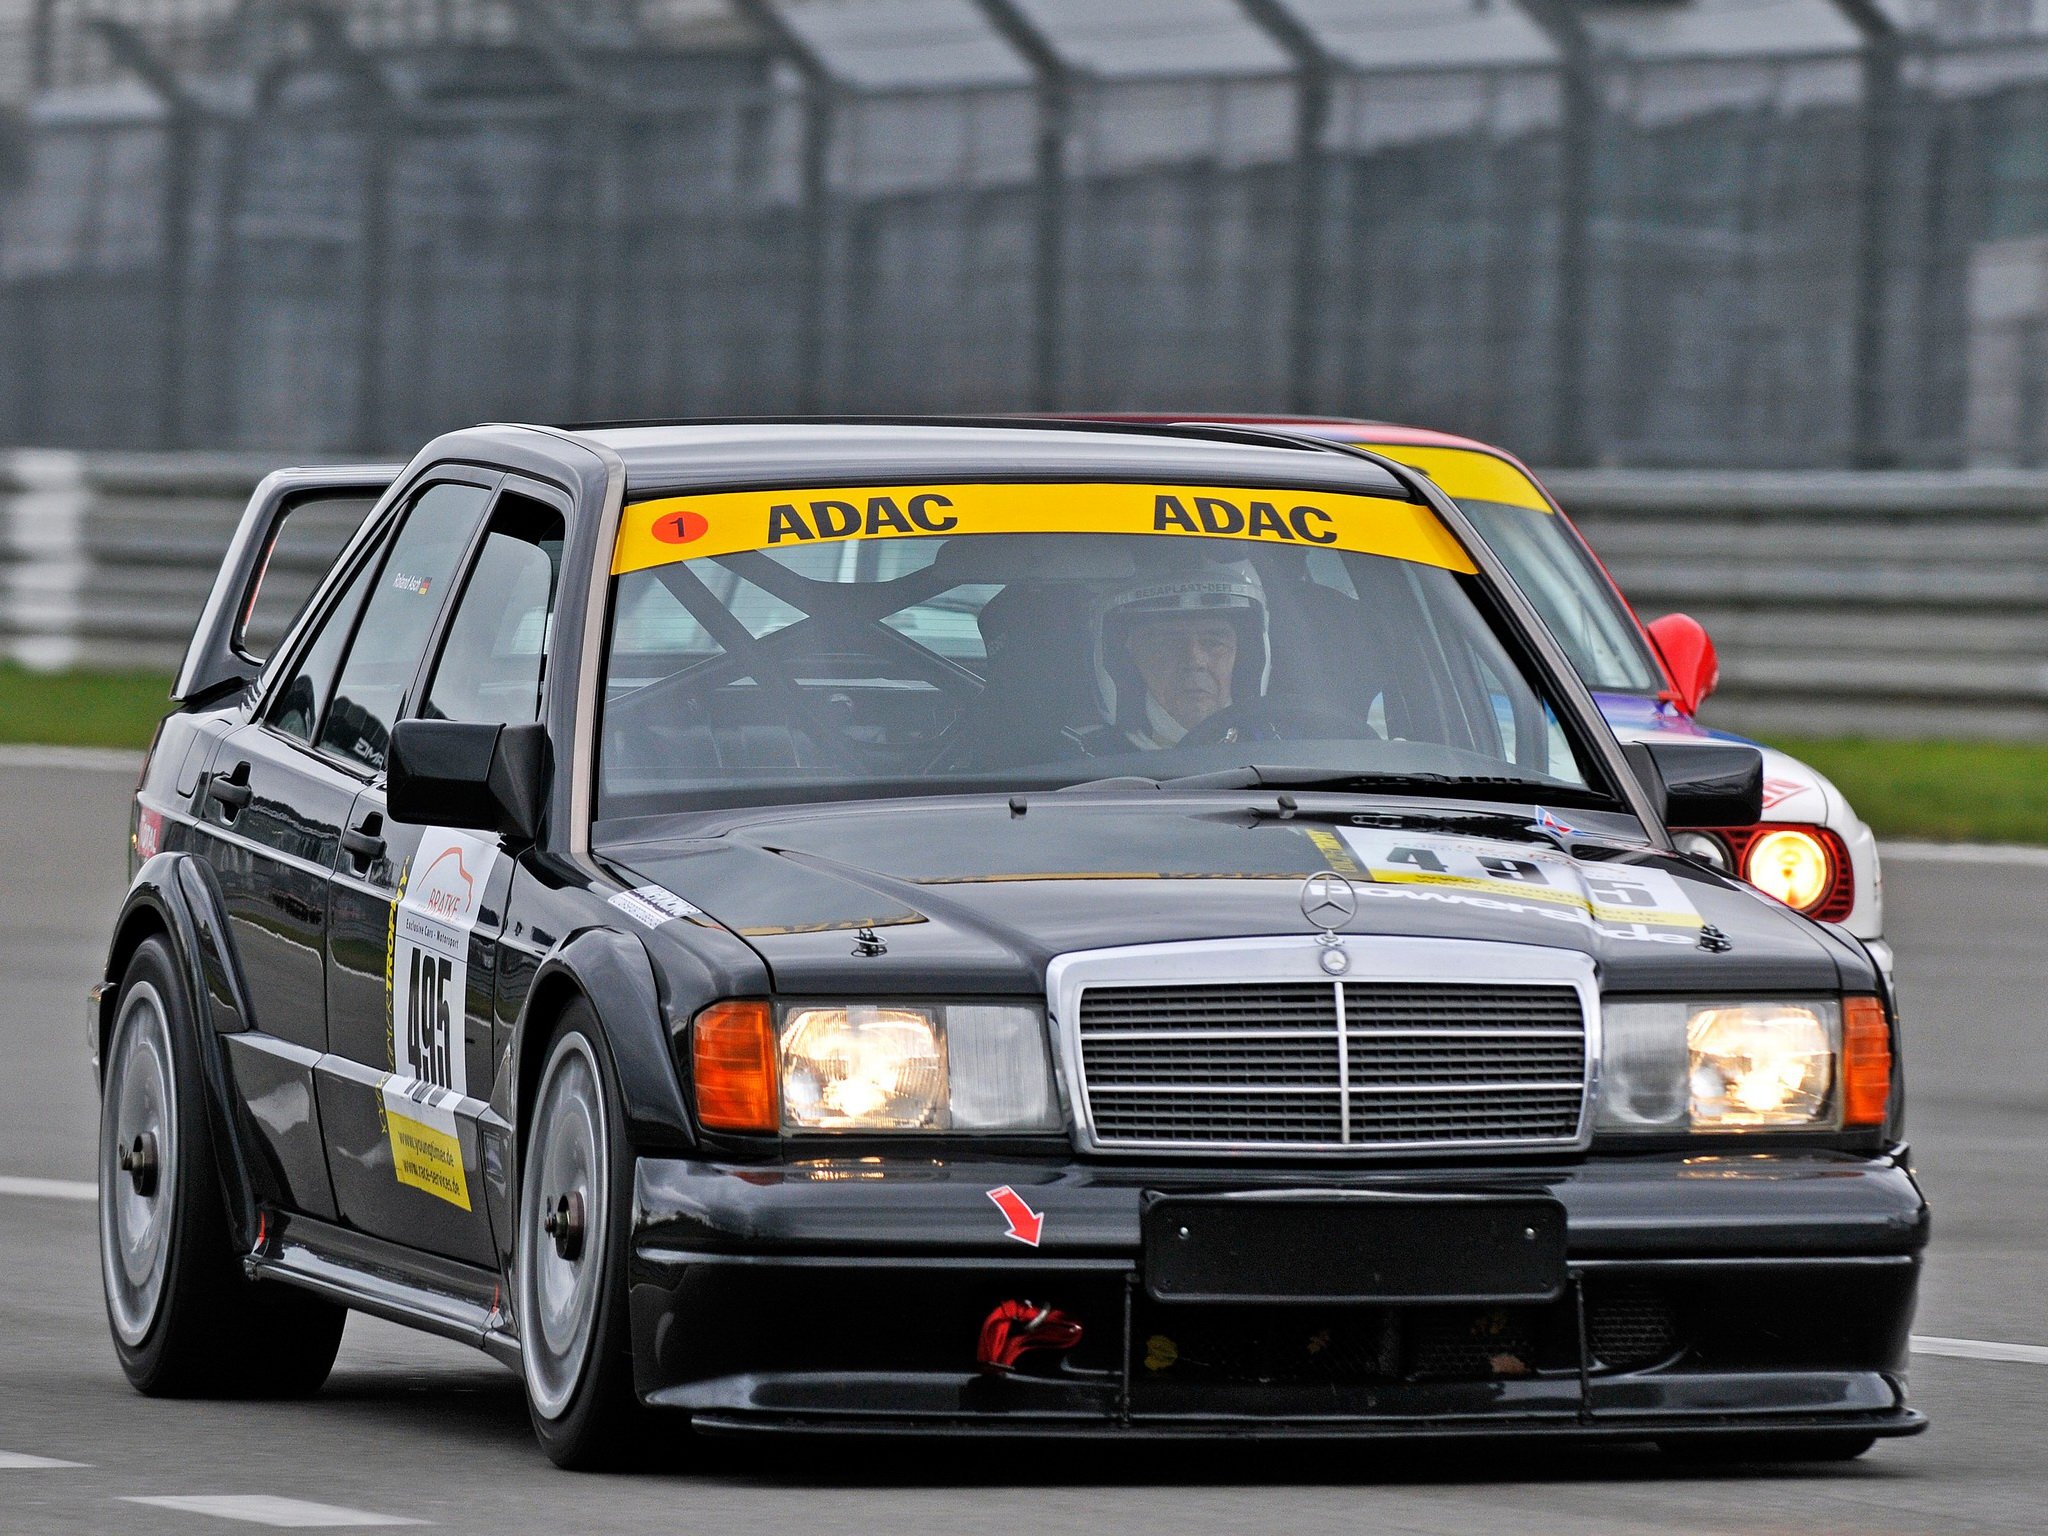 1991 93, Mercedes, Benz, 190e, Evolution, I i, Dtm,  w201 , Race, Racing, 190 Wallpaper